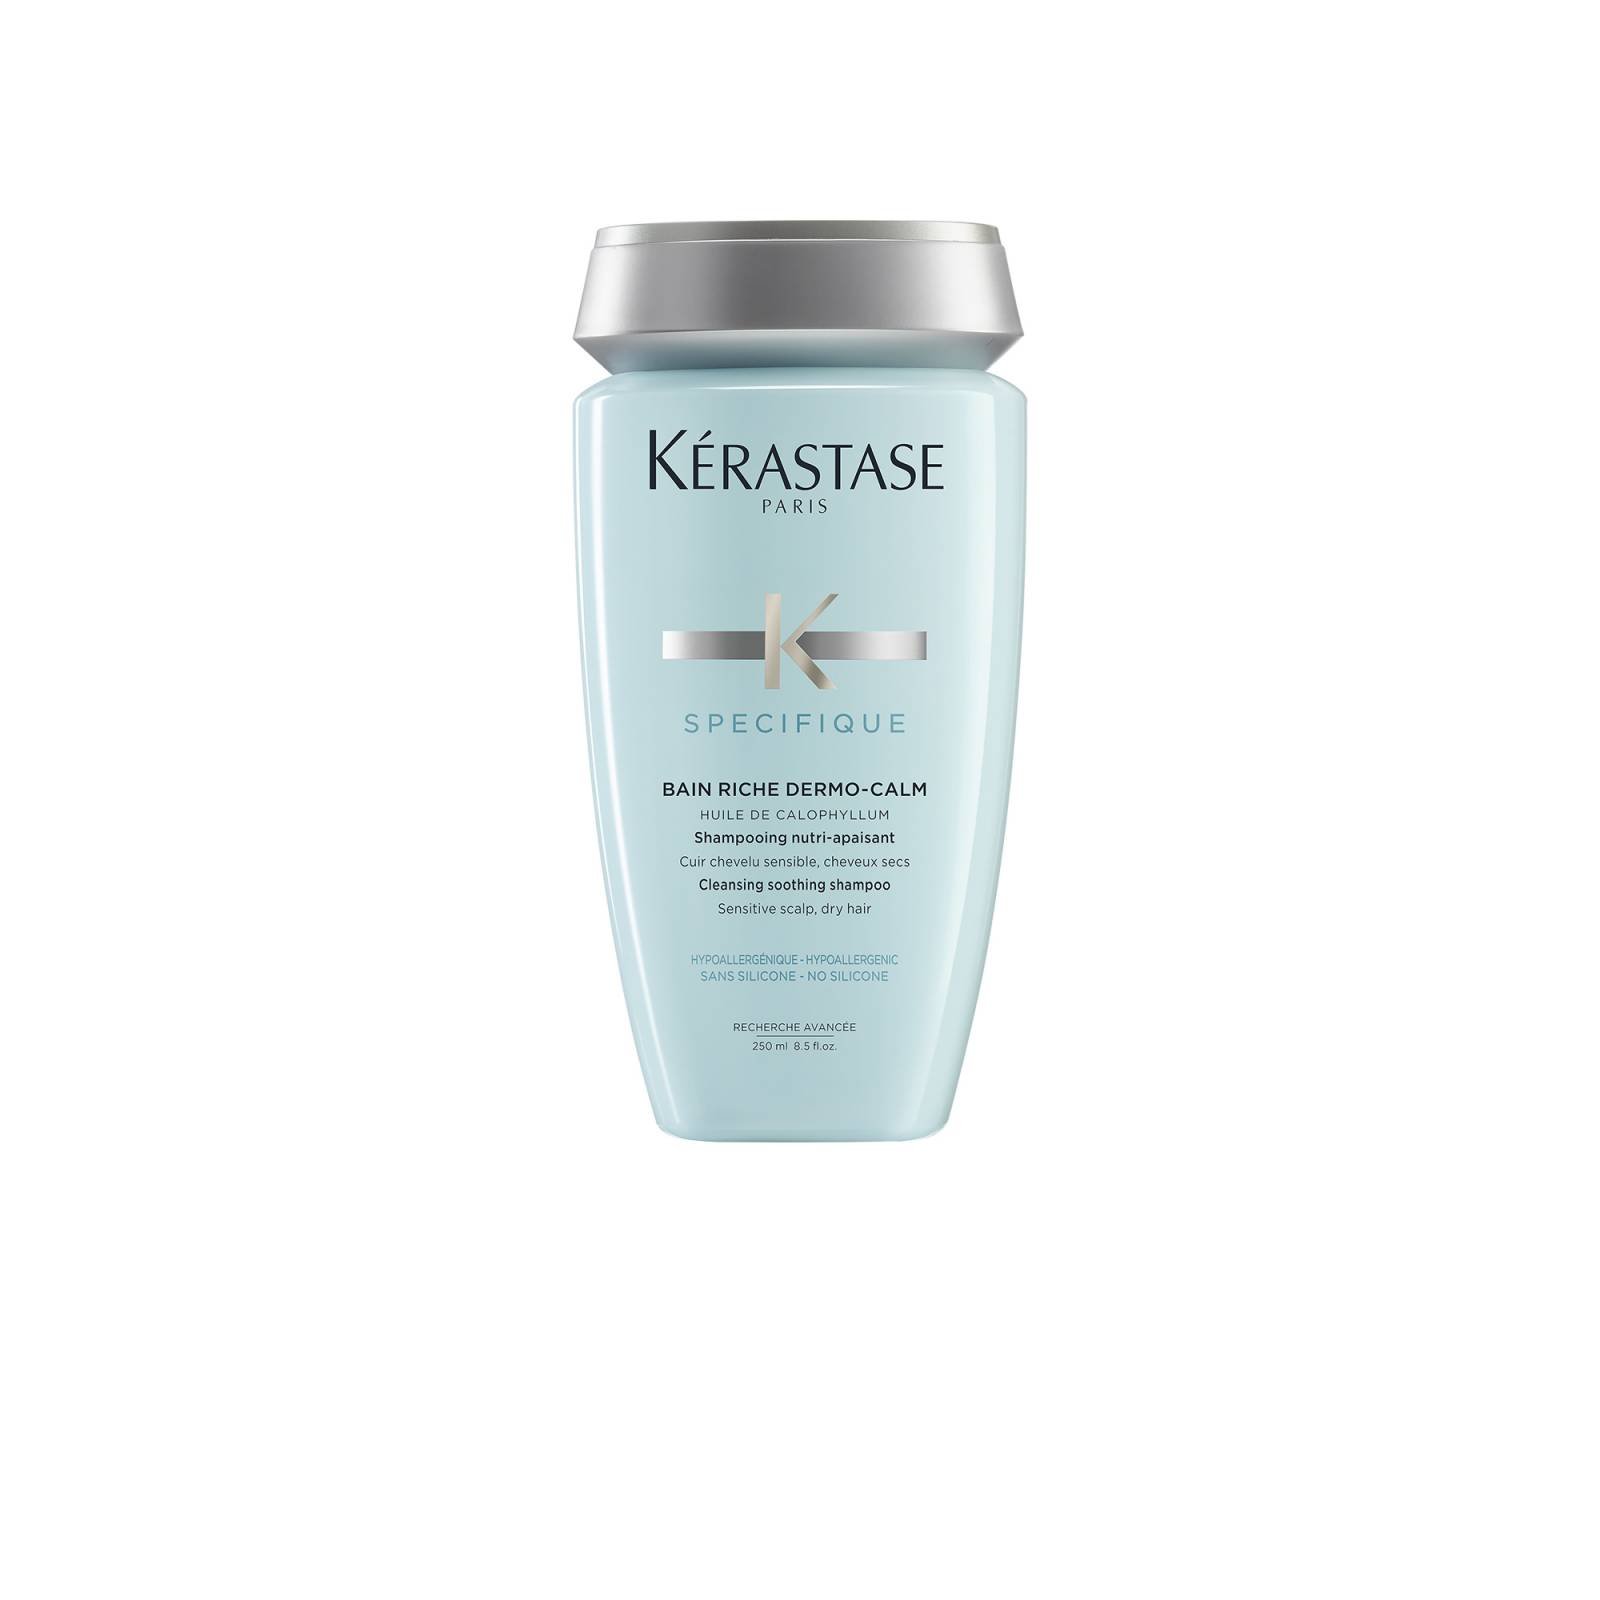 Kerastase Shampoo Bain Riche Dermo-calm Specifique 250 ml